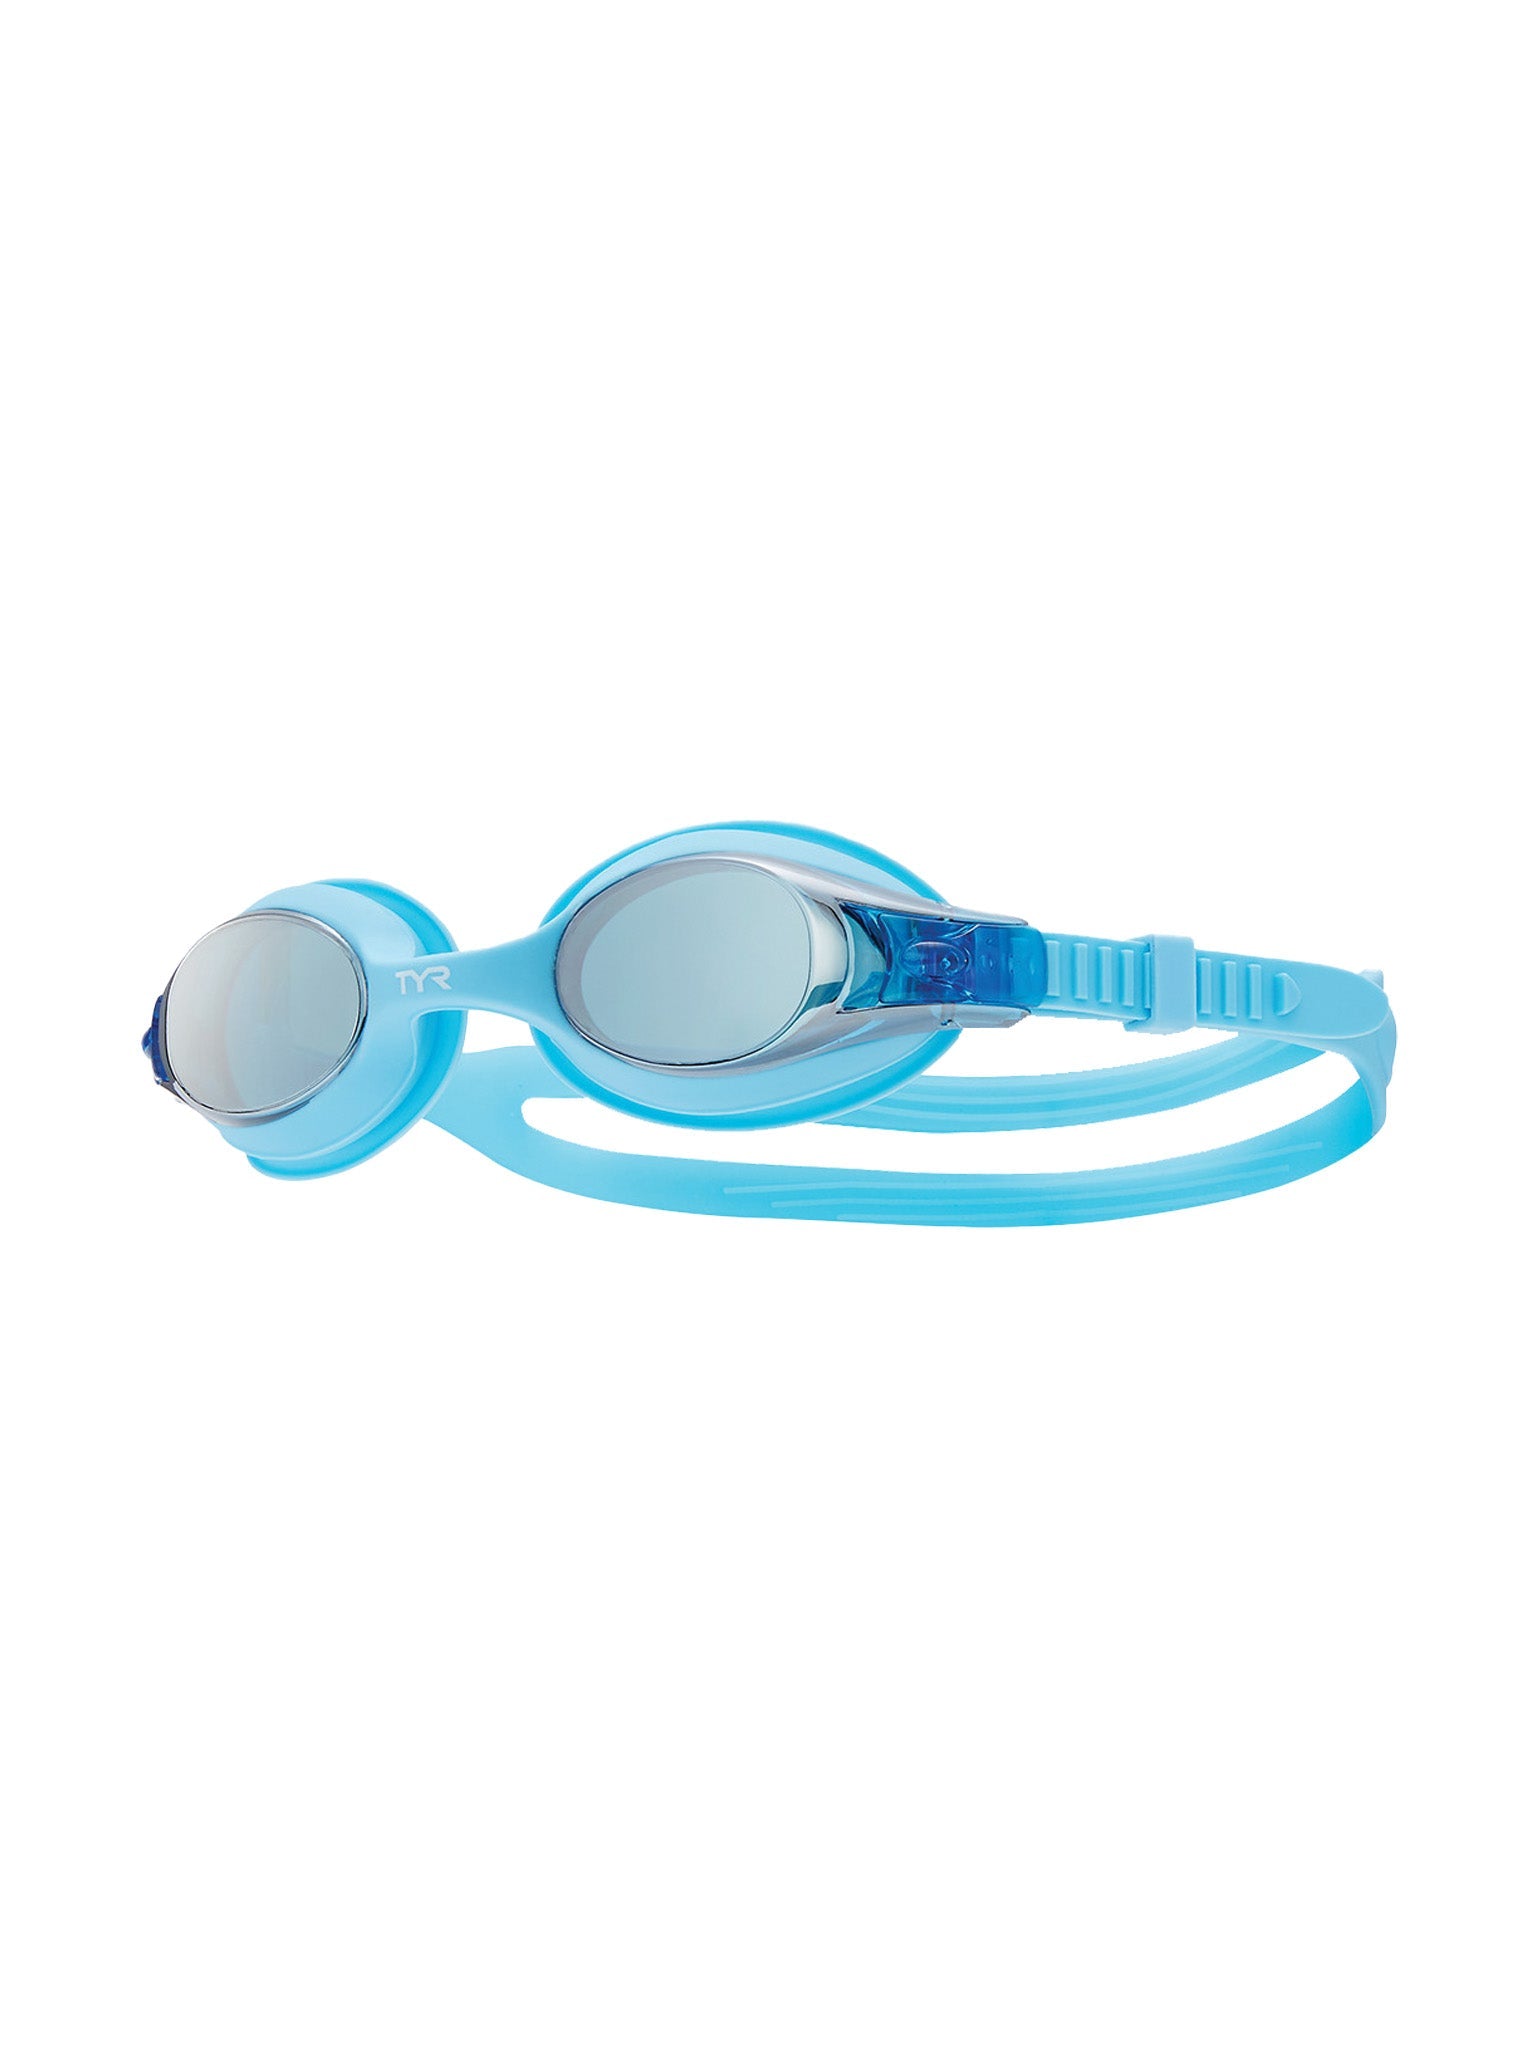 Lunettes de natation Swimple Mirrored pour enfants - Bleu